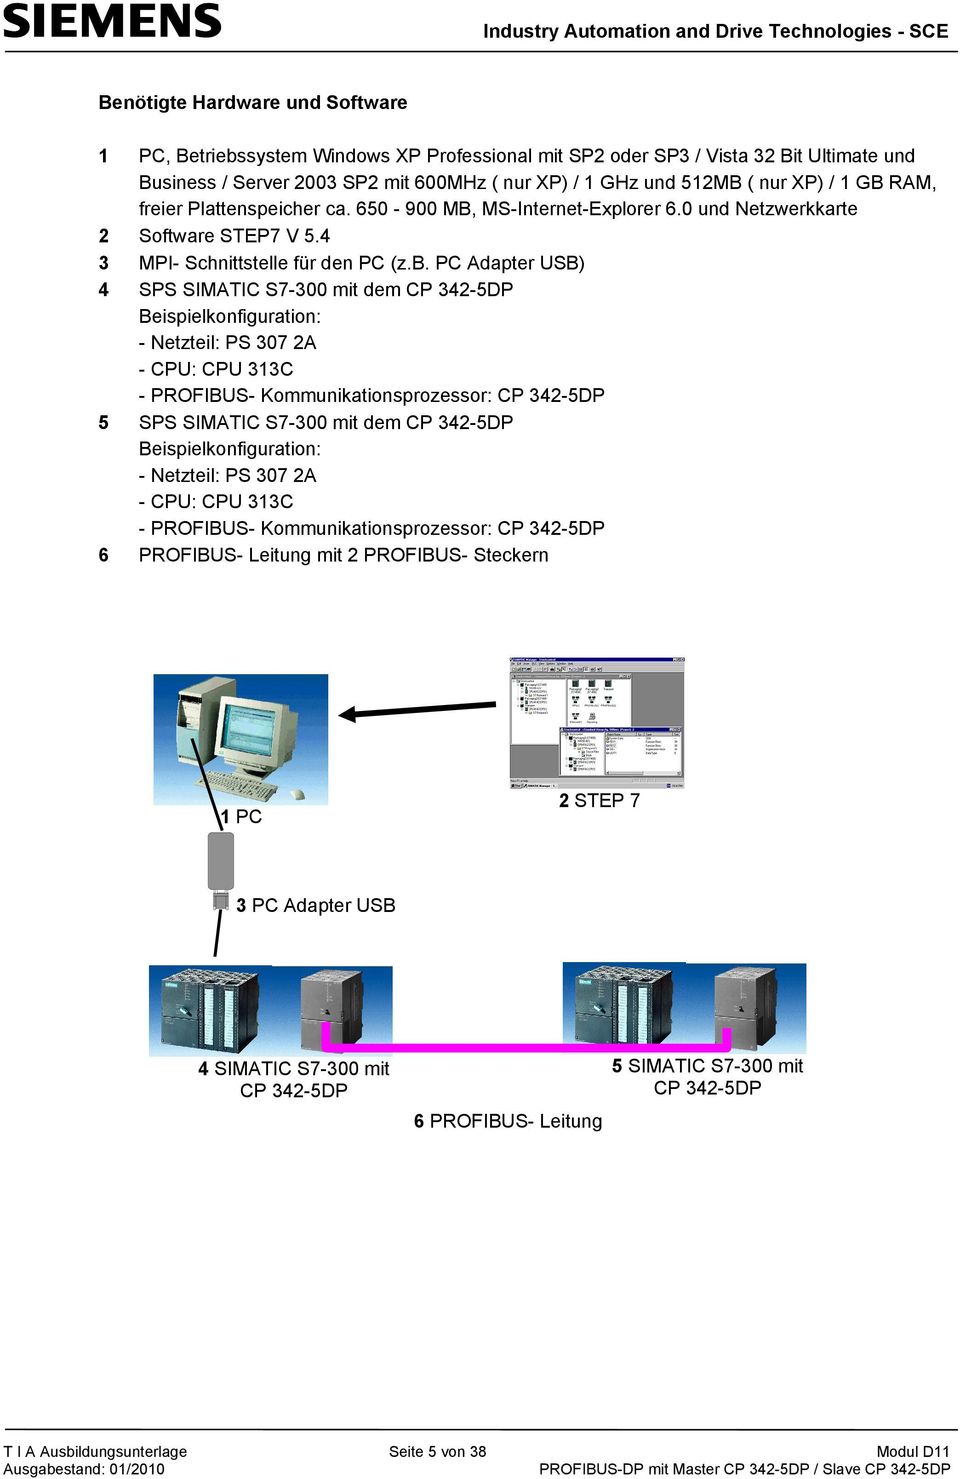 PC Adapter USB) 4 SPS SIMATIC S7-300 mit dem CP 342-5DP Beispielkonfiguration: - Netzteil: PS 307 2A - CPU: CPU 313C - PROFIBUS- Kommunikationsprozessor: CP 342-5DP 5 SPS SIMATIC S7-300 mit dem CP